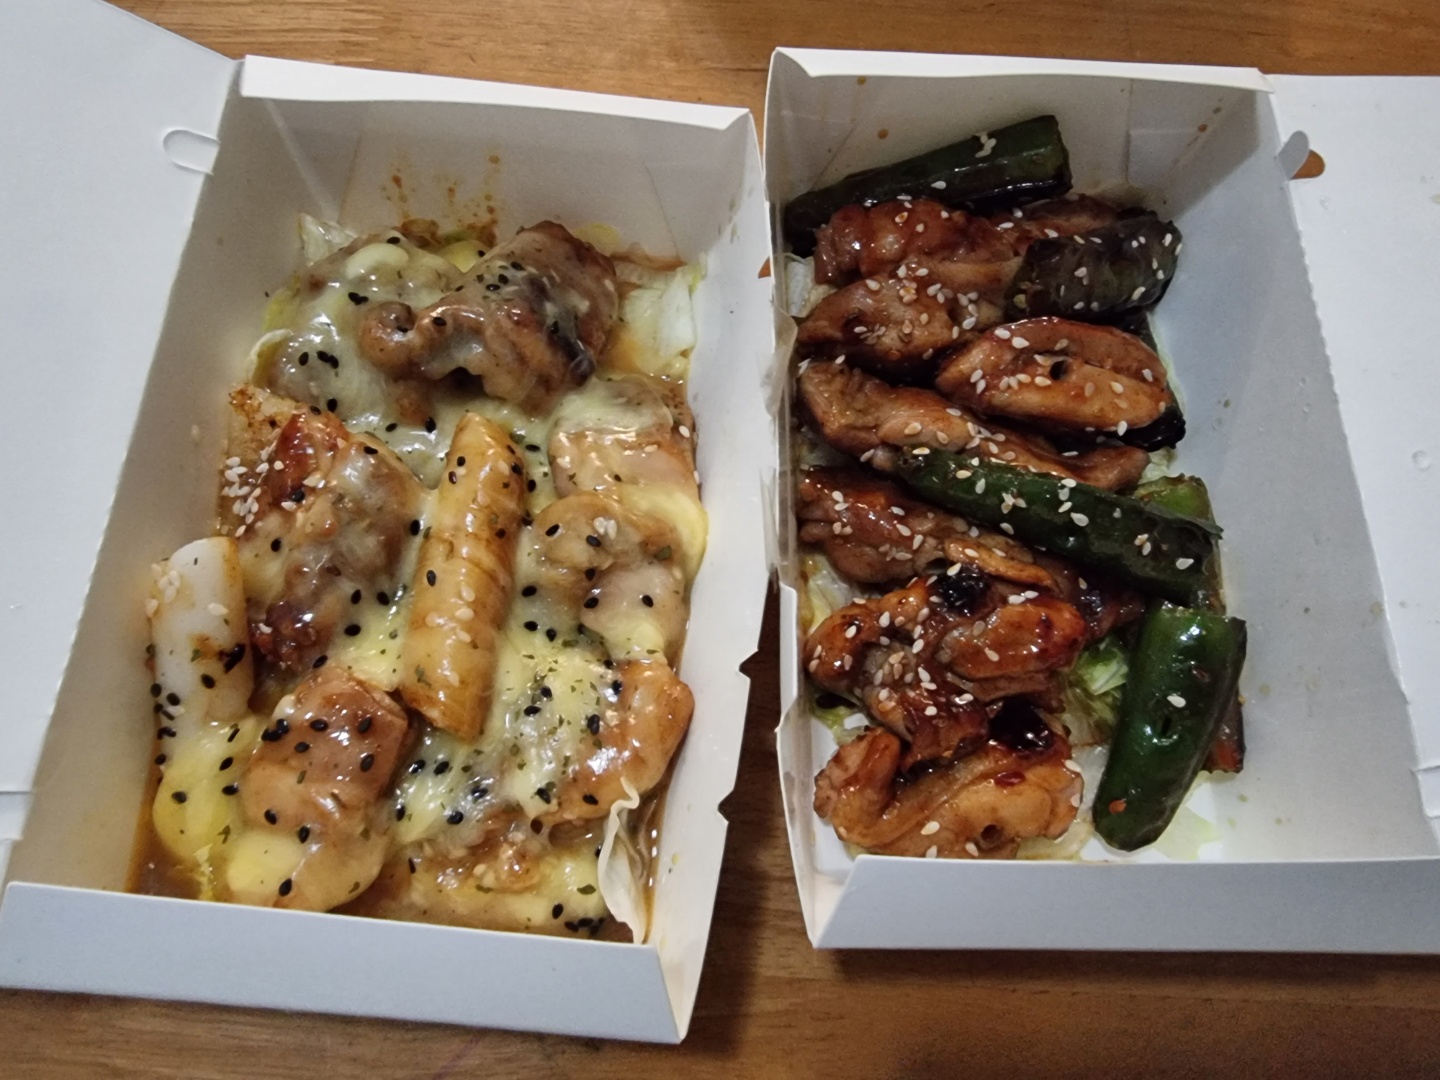 빅스틱의 대표 메뉴 치즈 떡볶이 치킨과 스파이시 치킨